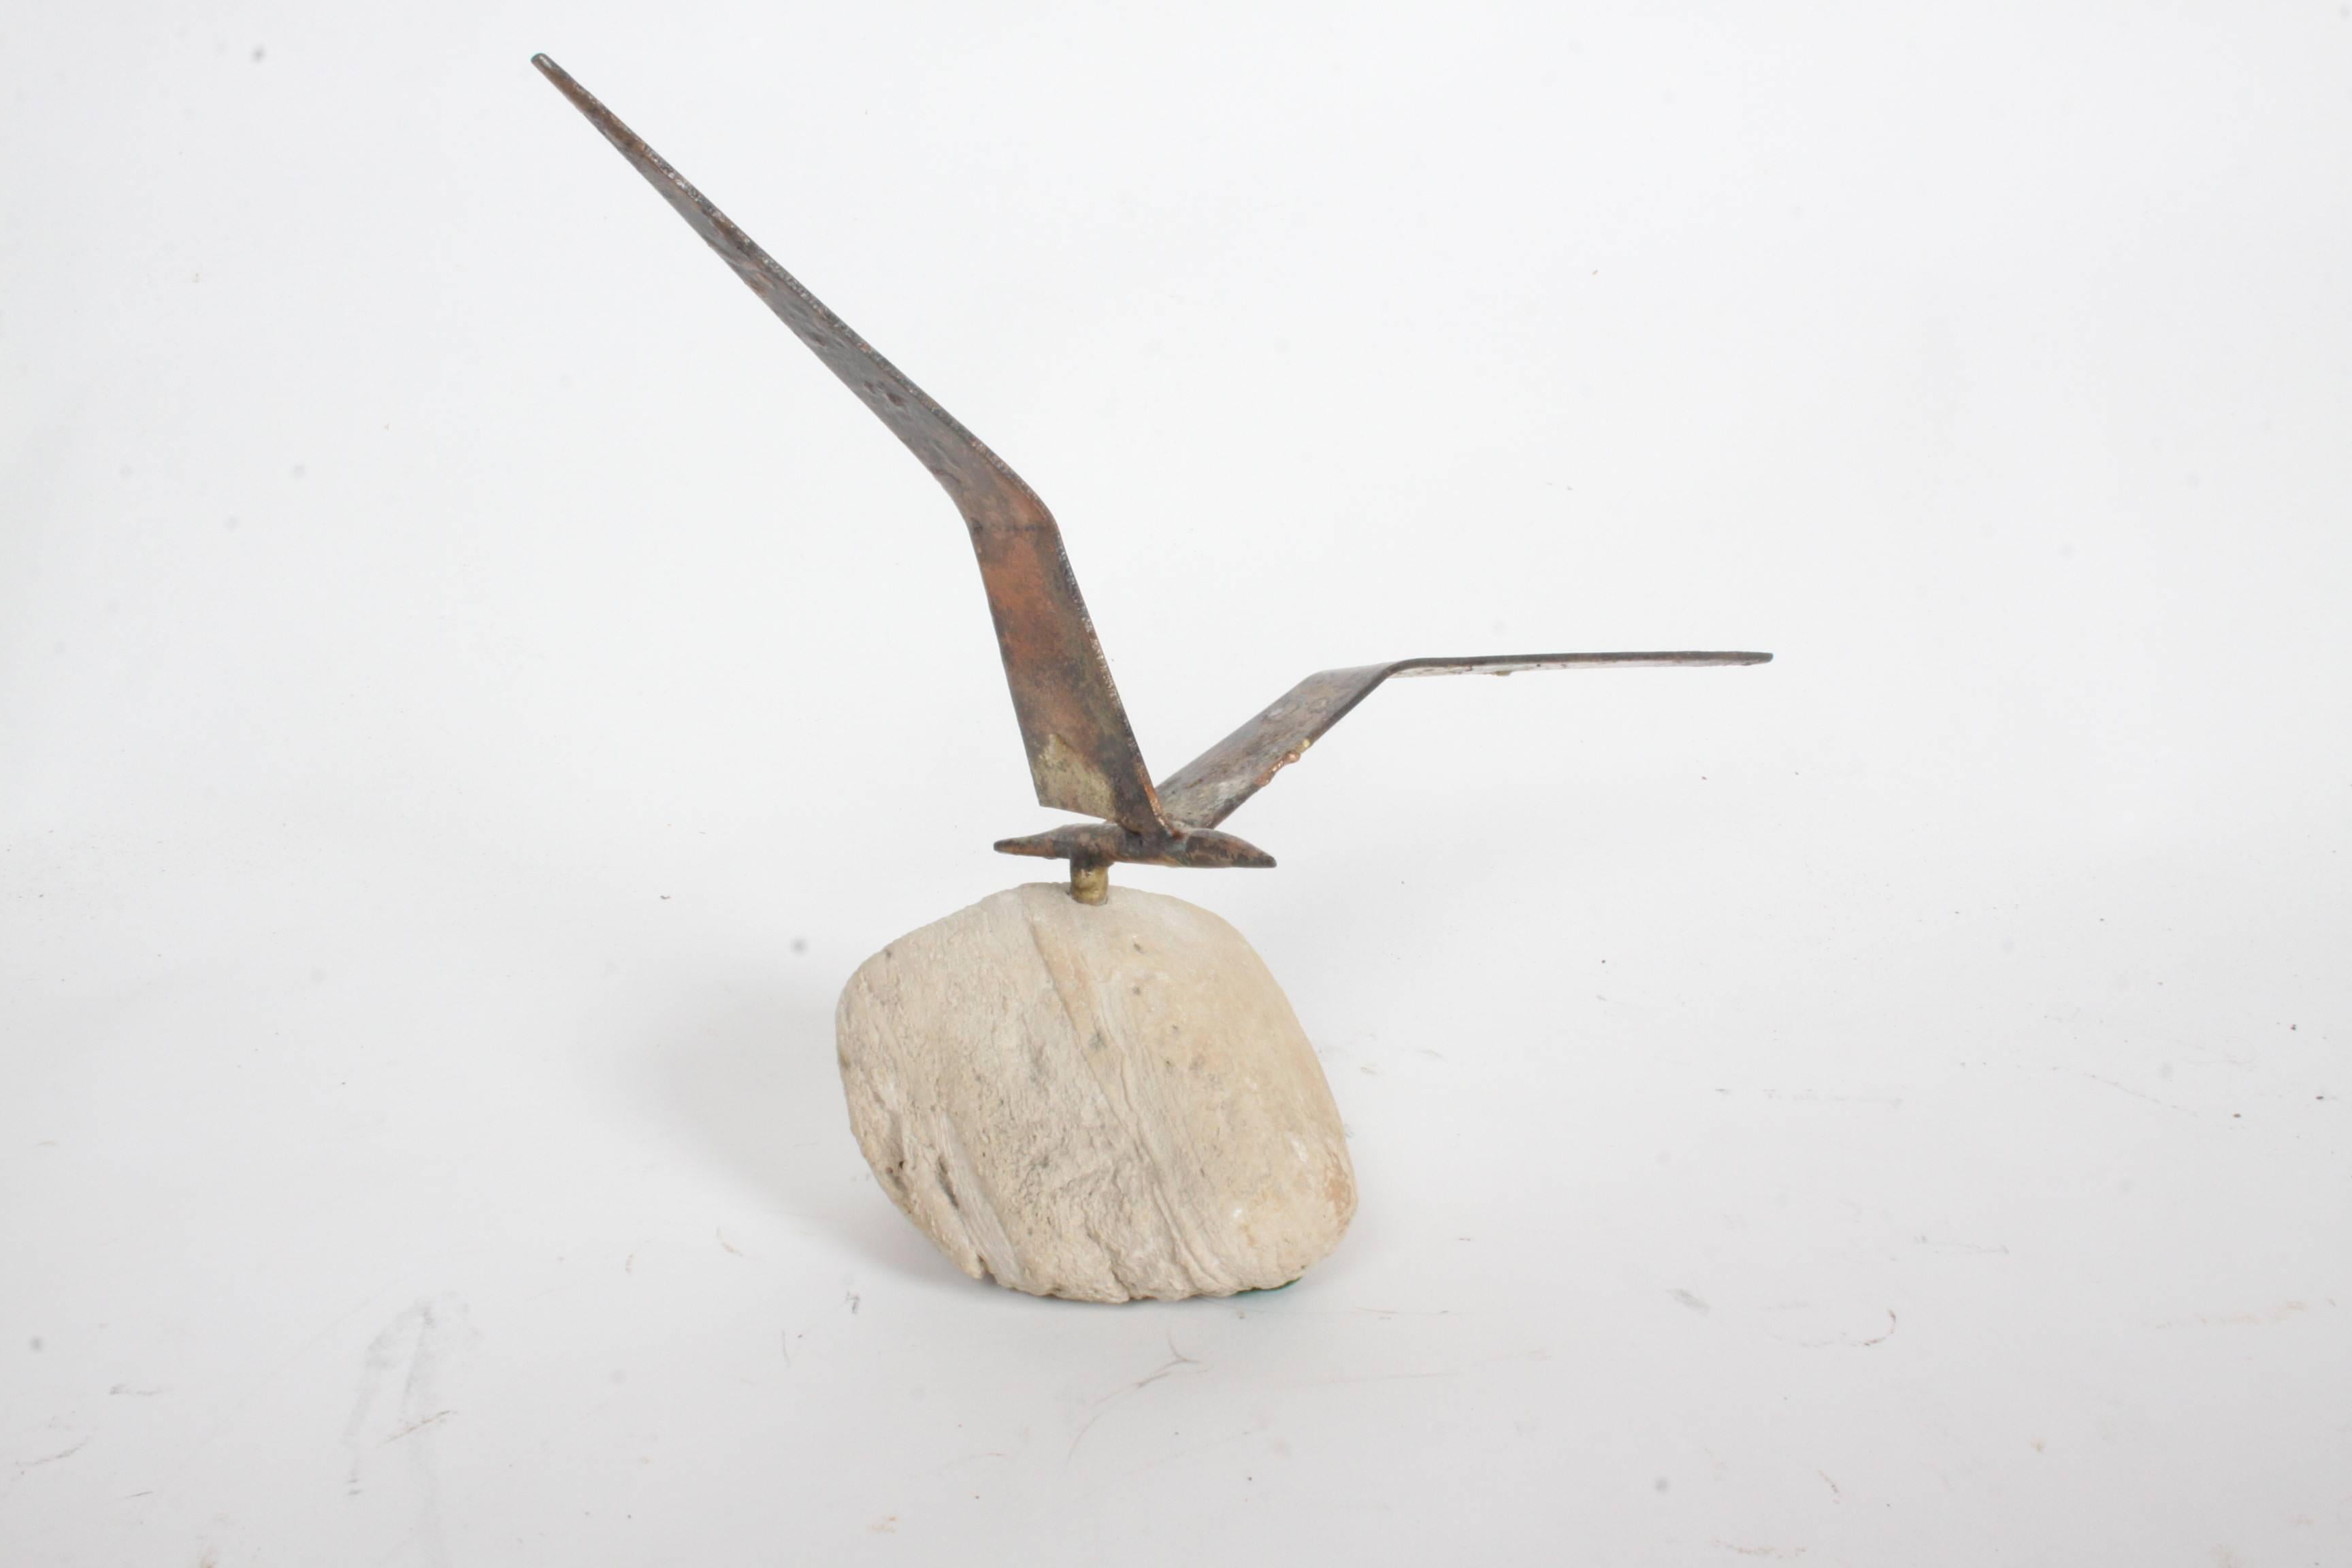 Oiseau en vol en métal 'Curtis Jere', datant des années 1960, en patine appliquée, sur socle en pierre.